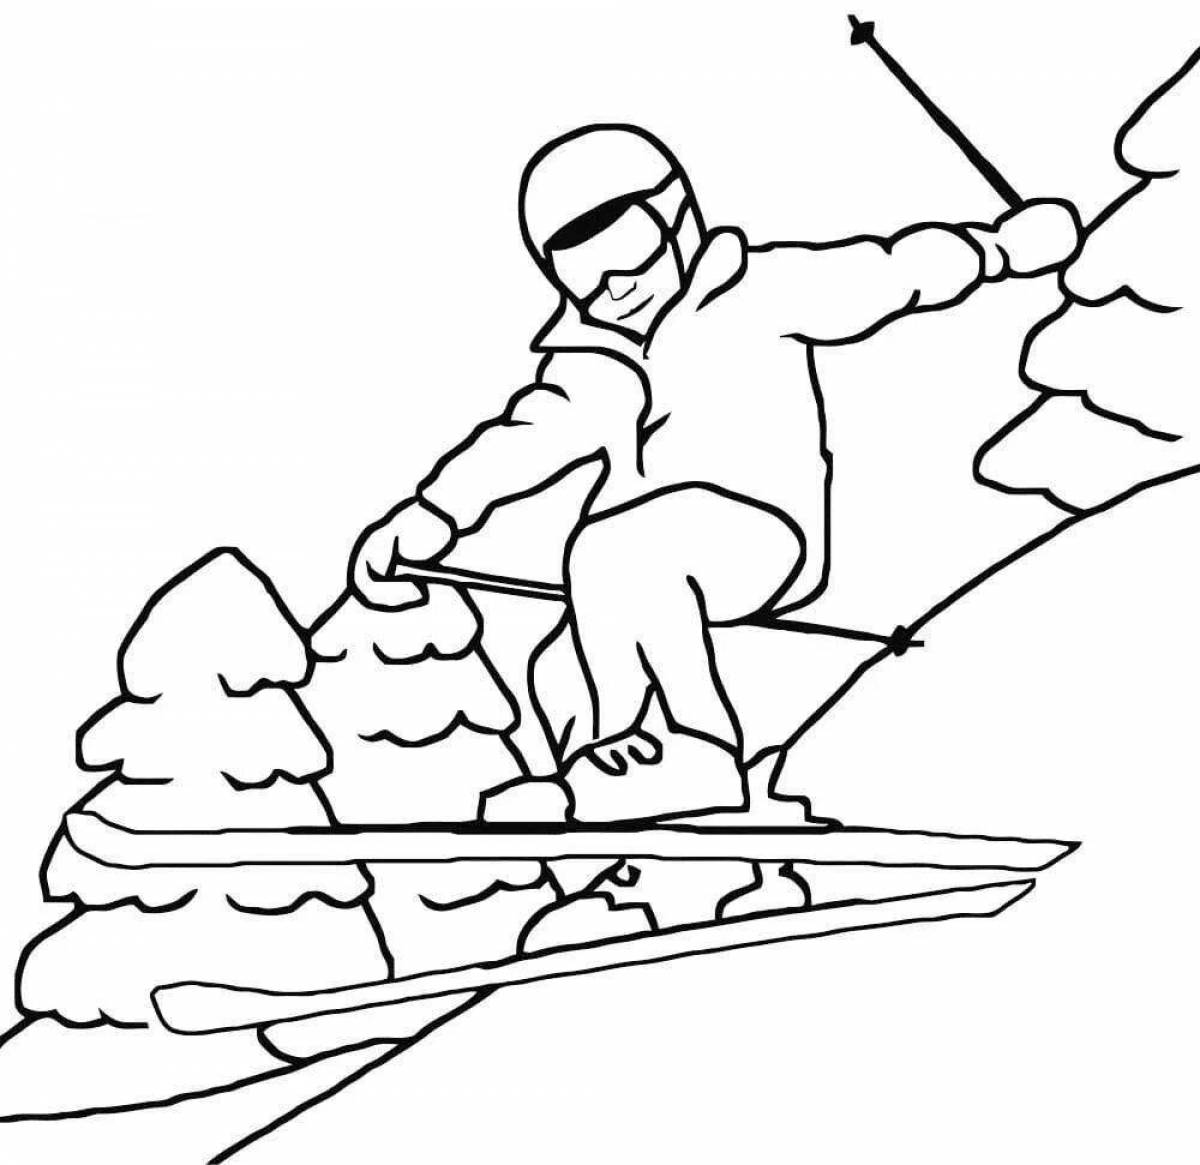 Цепкий человек на лыжах